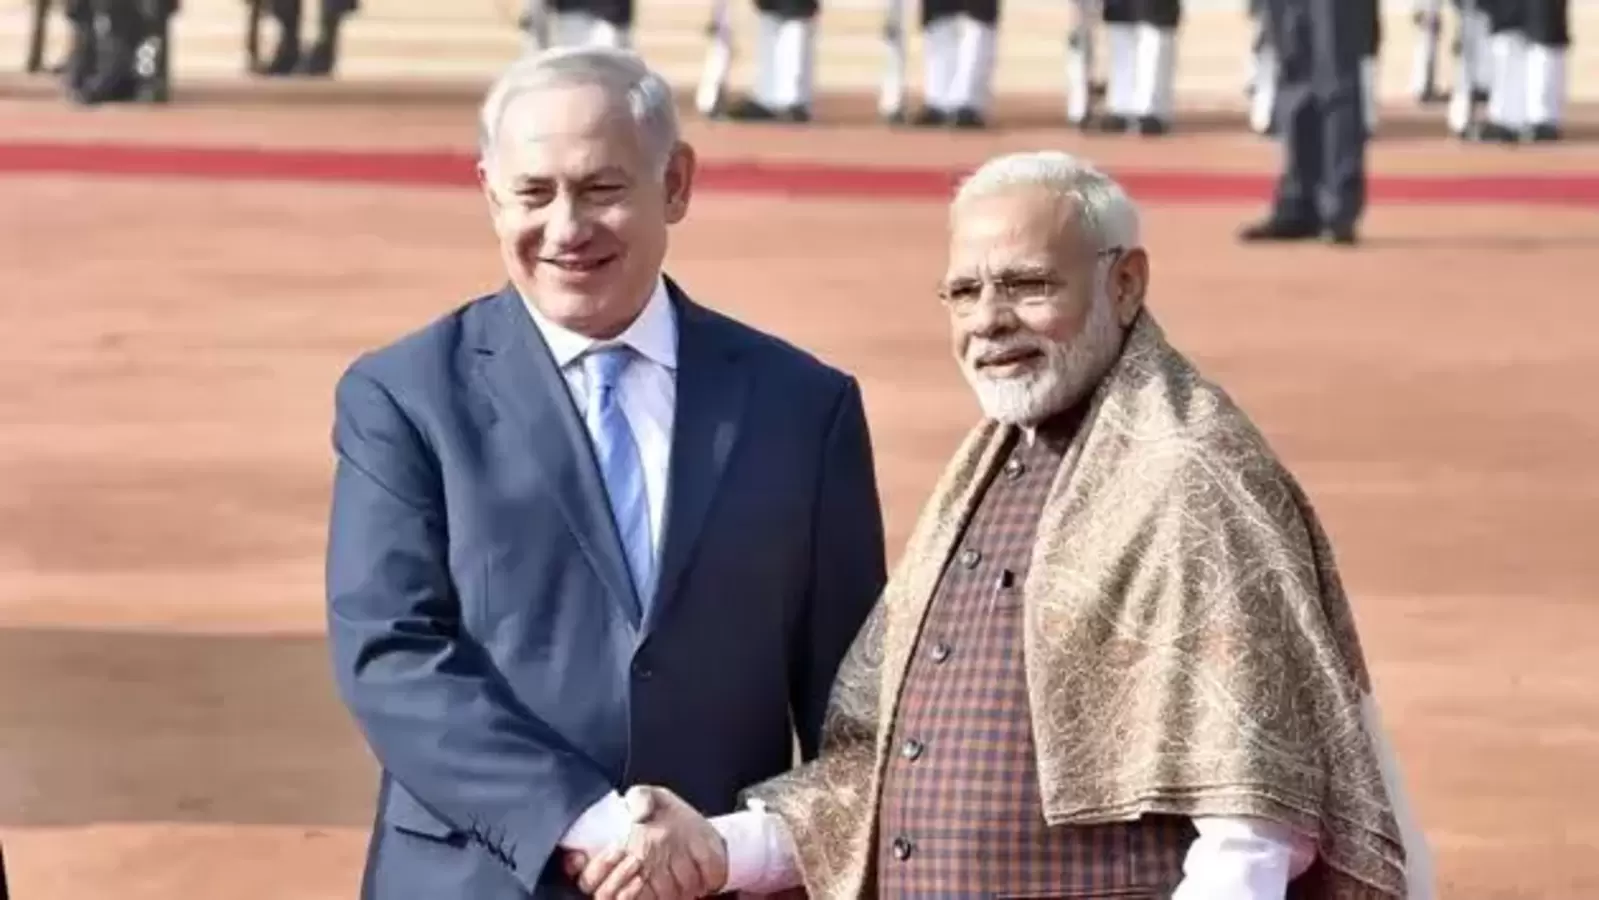 El primer ministro Modi felicita al israelí Netanyahu por la victoria en las elecciones generales |  Últimas noticias India